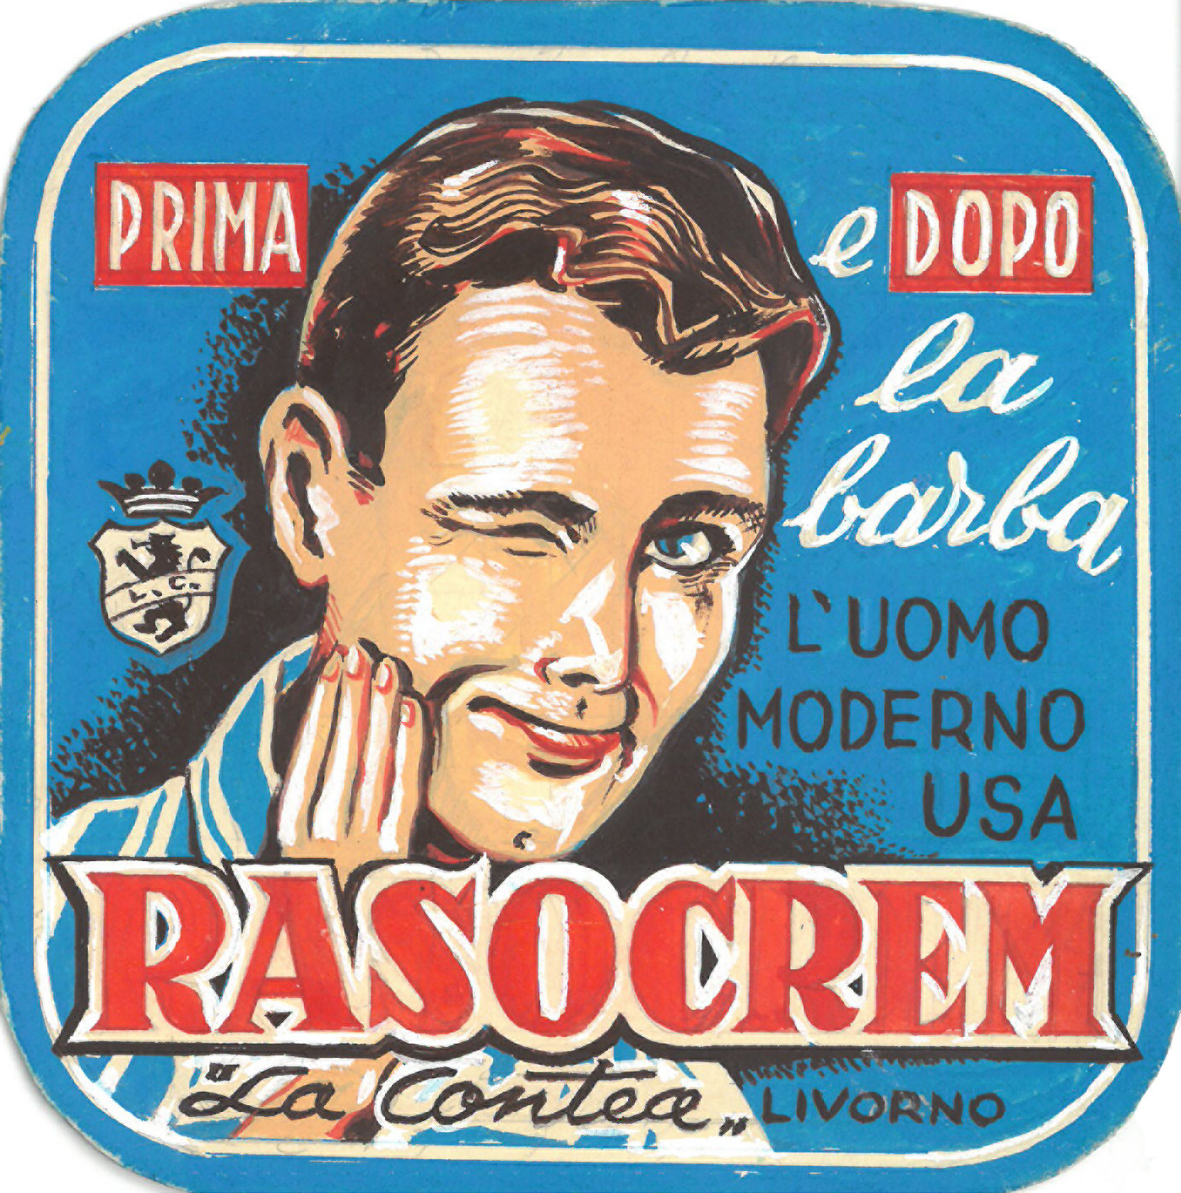 Bozzetto per vetrofania "Prima e dopo la barba l'uomo moderno usa Rasocrem "La Contea" Livorno"